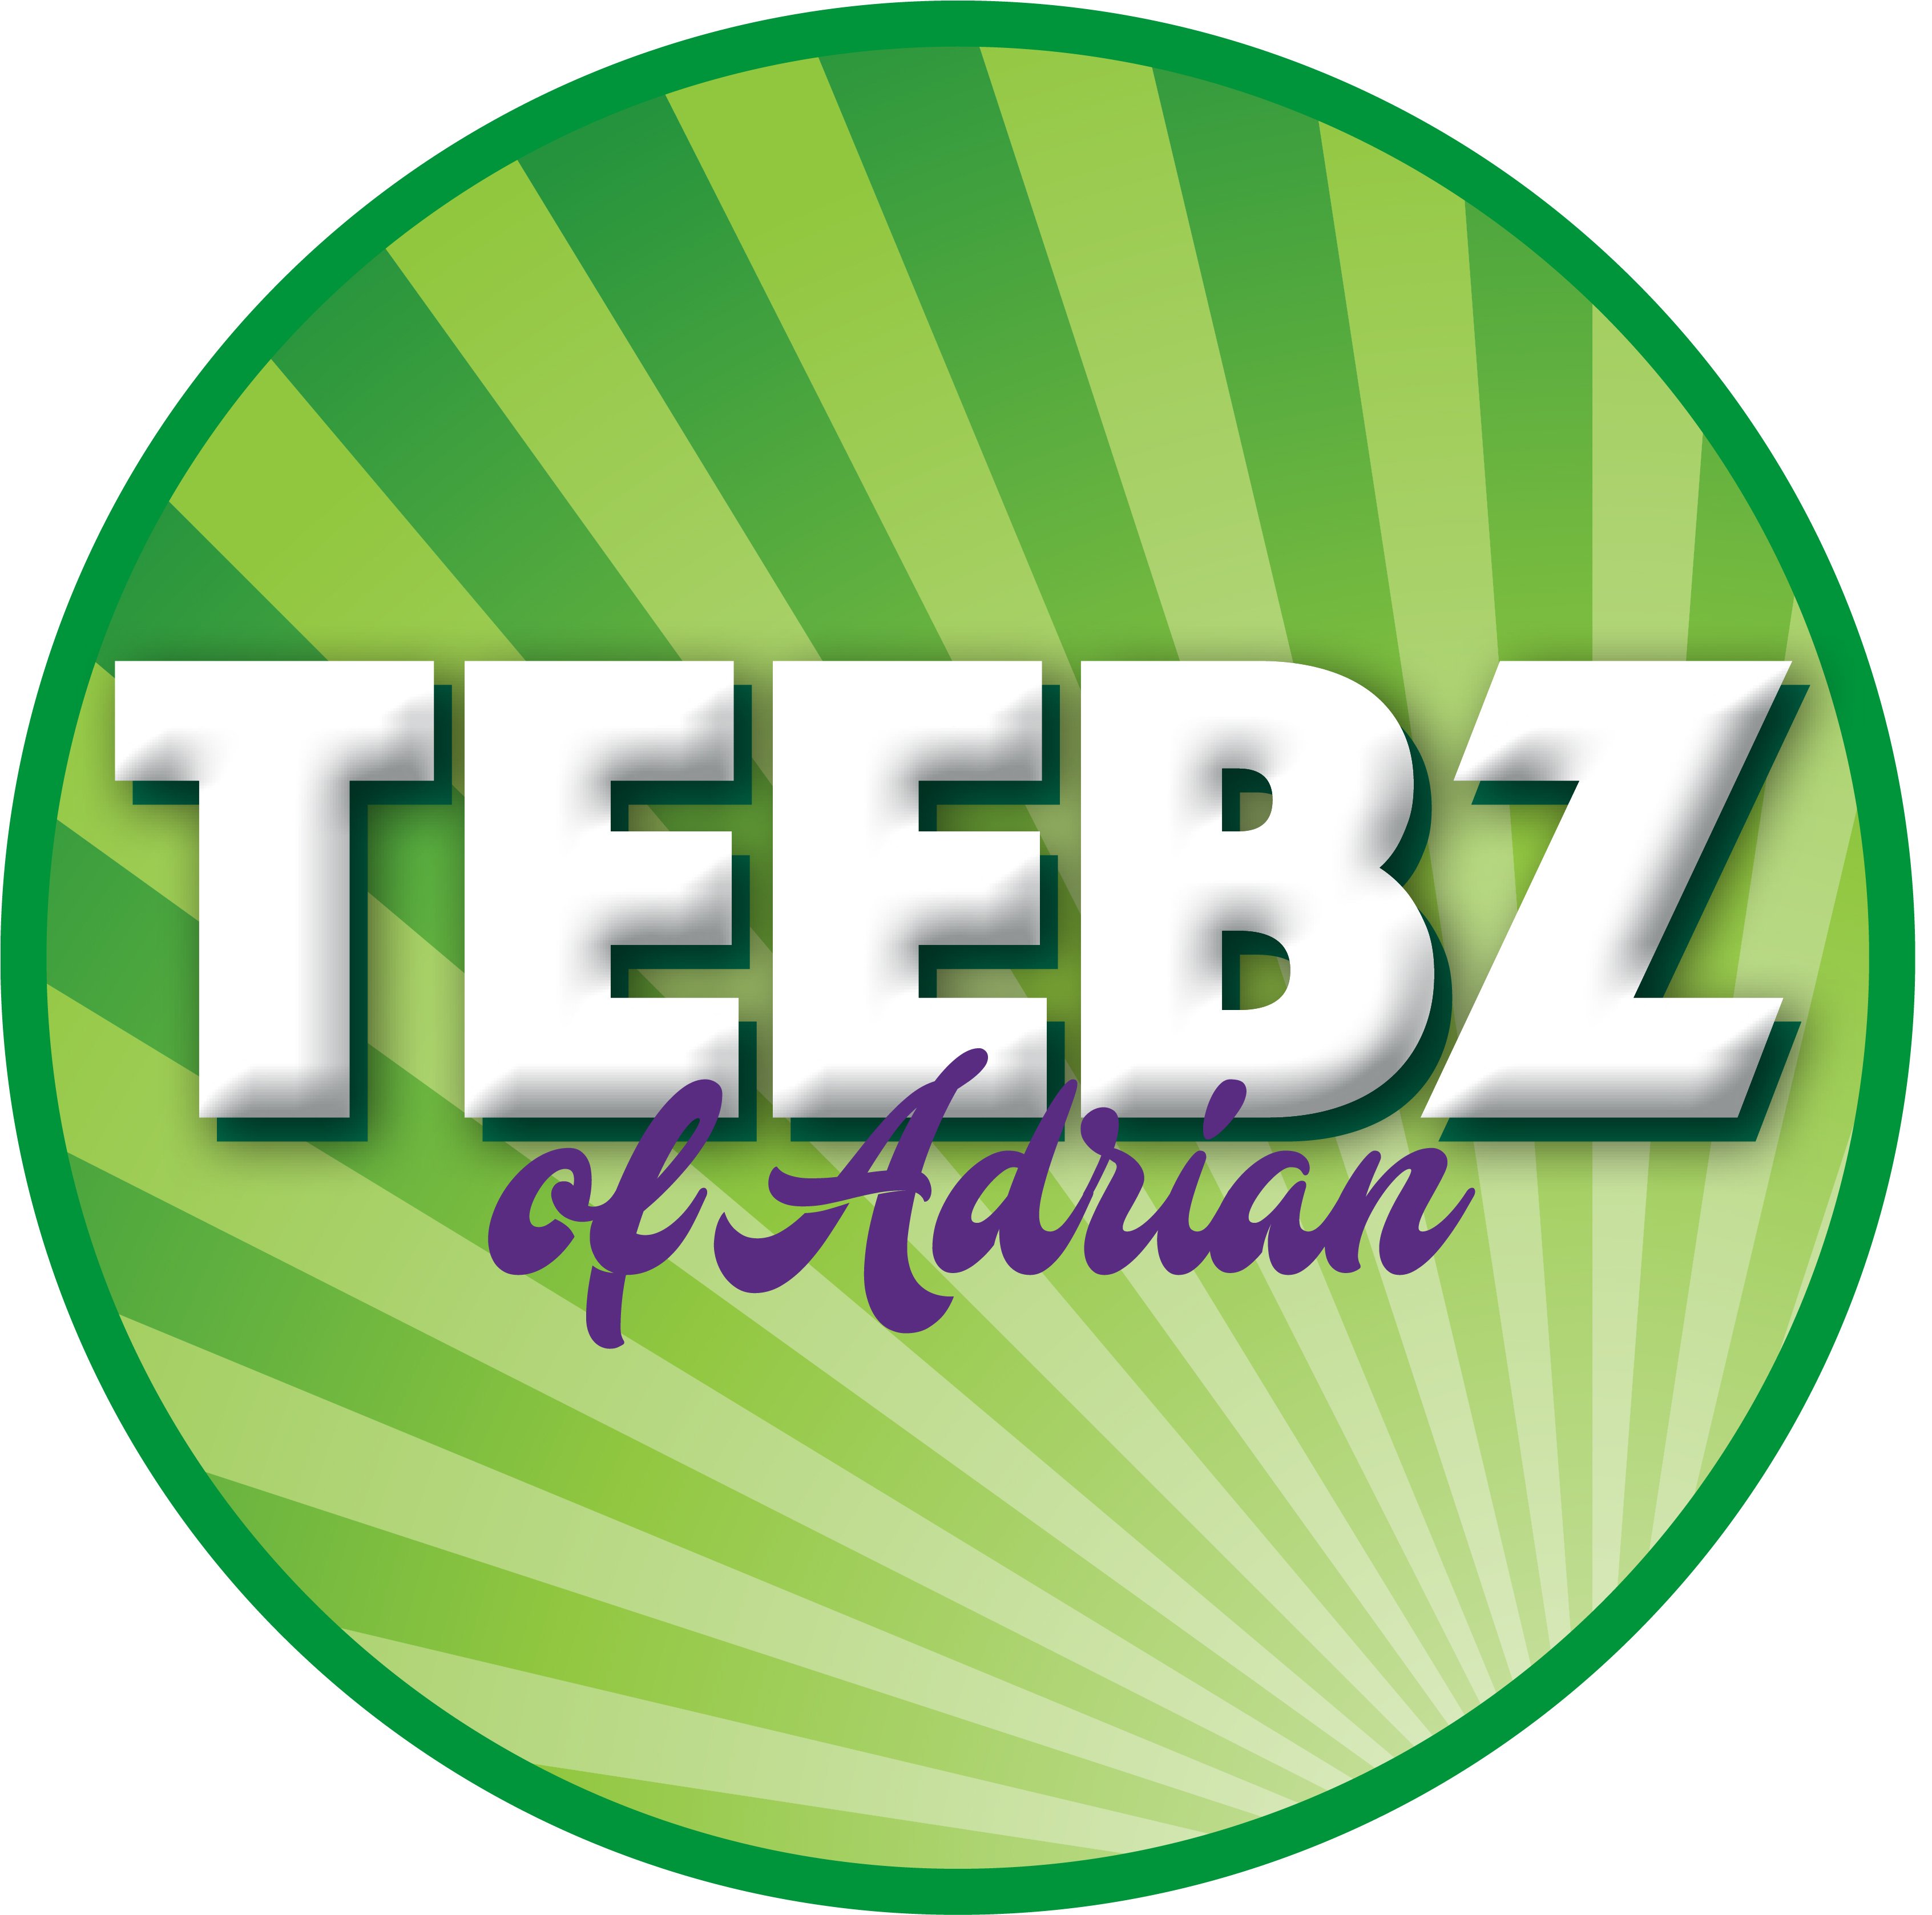 Teebz of Adrian logo